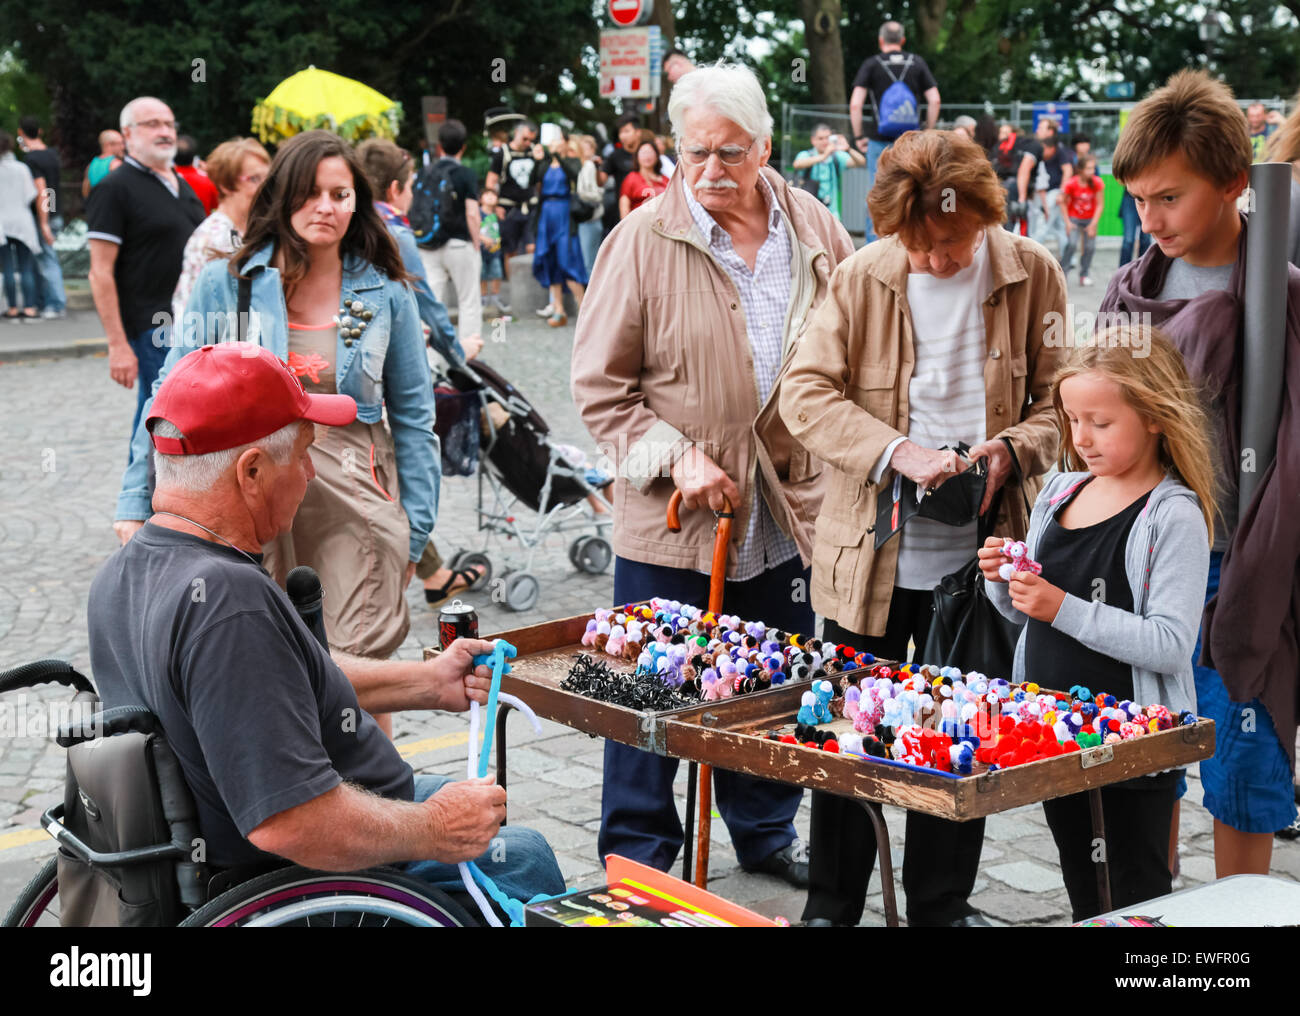 Paris, France - 9 août 2014 : Mobilité homme âgé en faisant de petits dons de jouets colorés près de la Basilique du Sacré-Cœur dans la journée d'été Banque D'Images